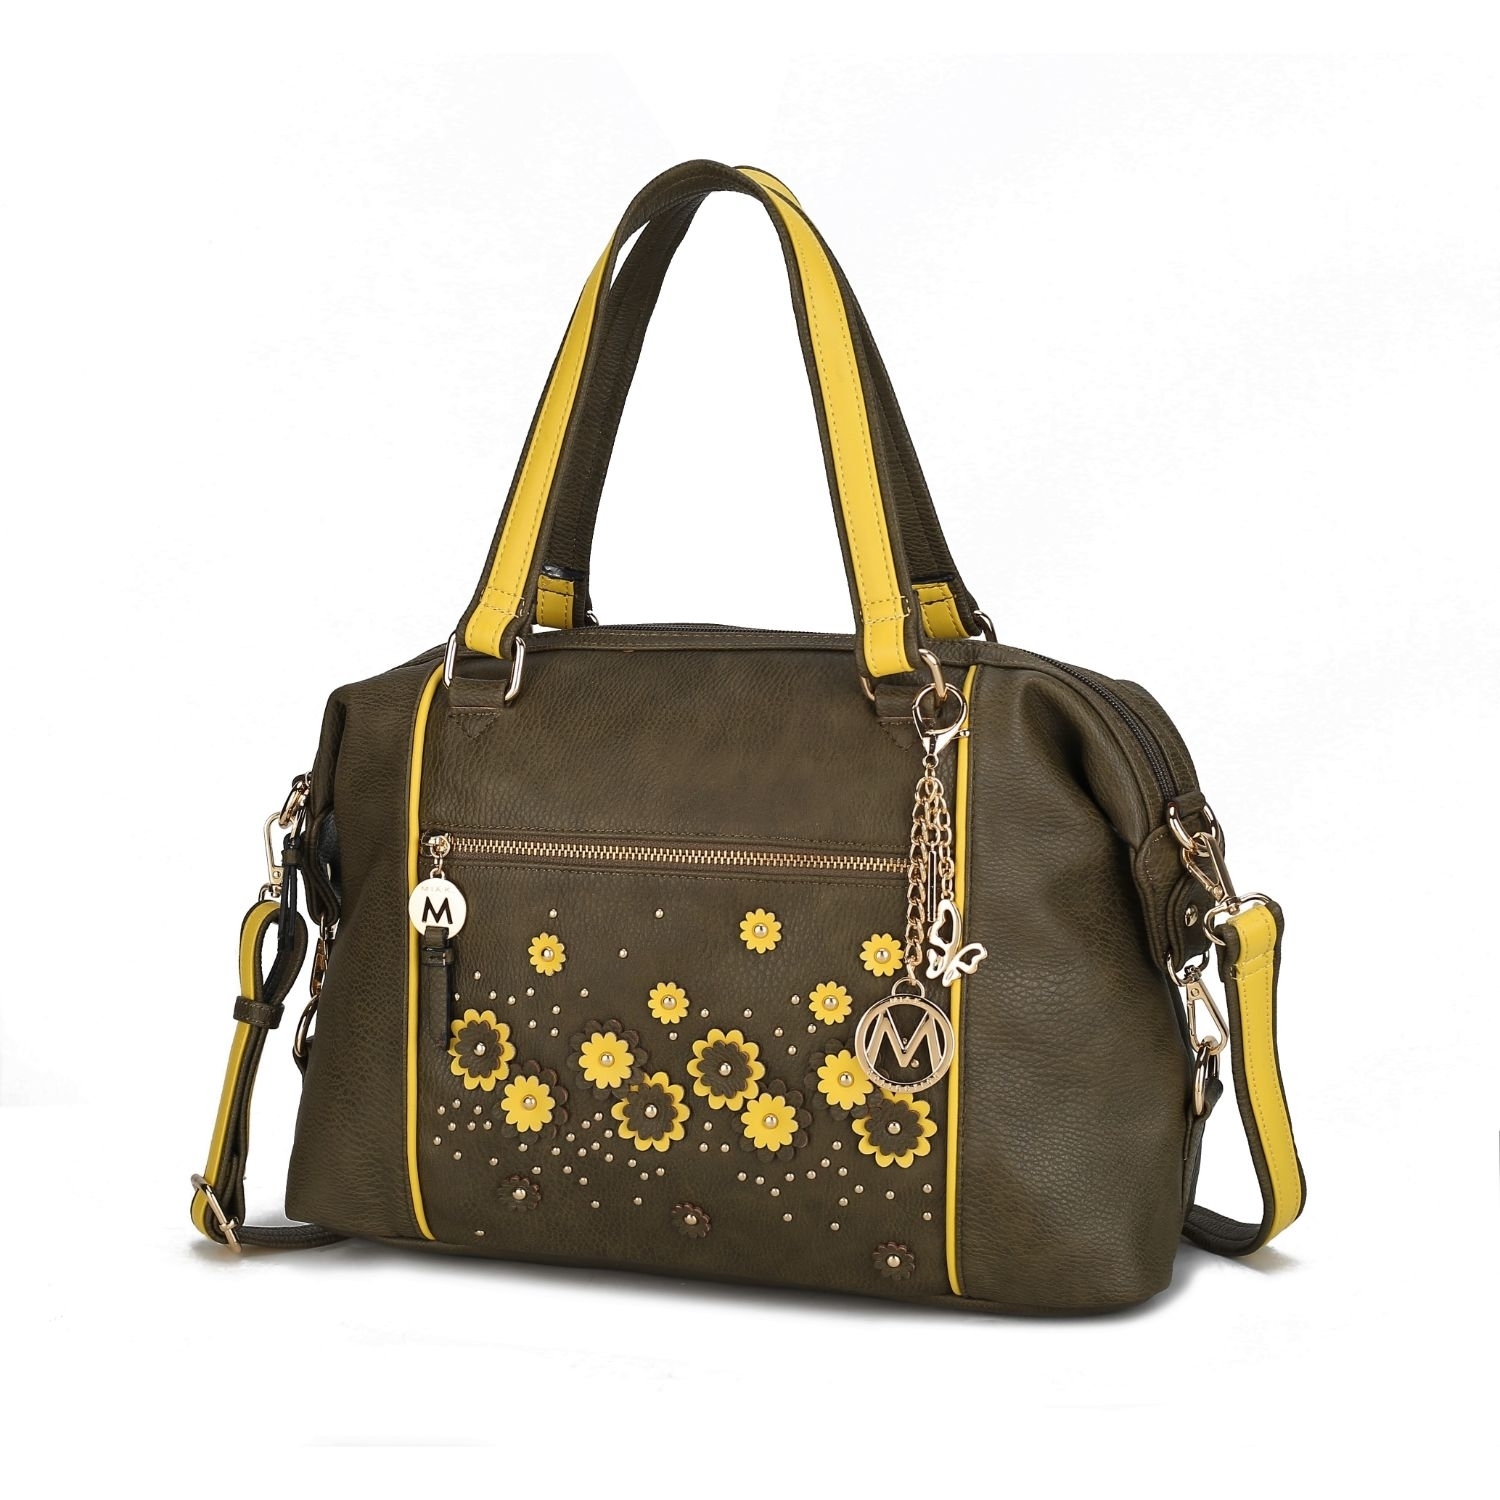 MKF Collection Francis Tote Handbag By Mia K - Green